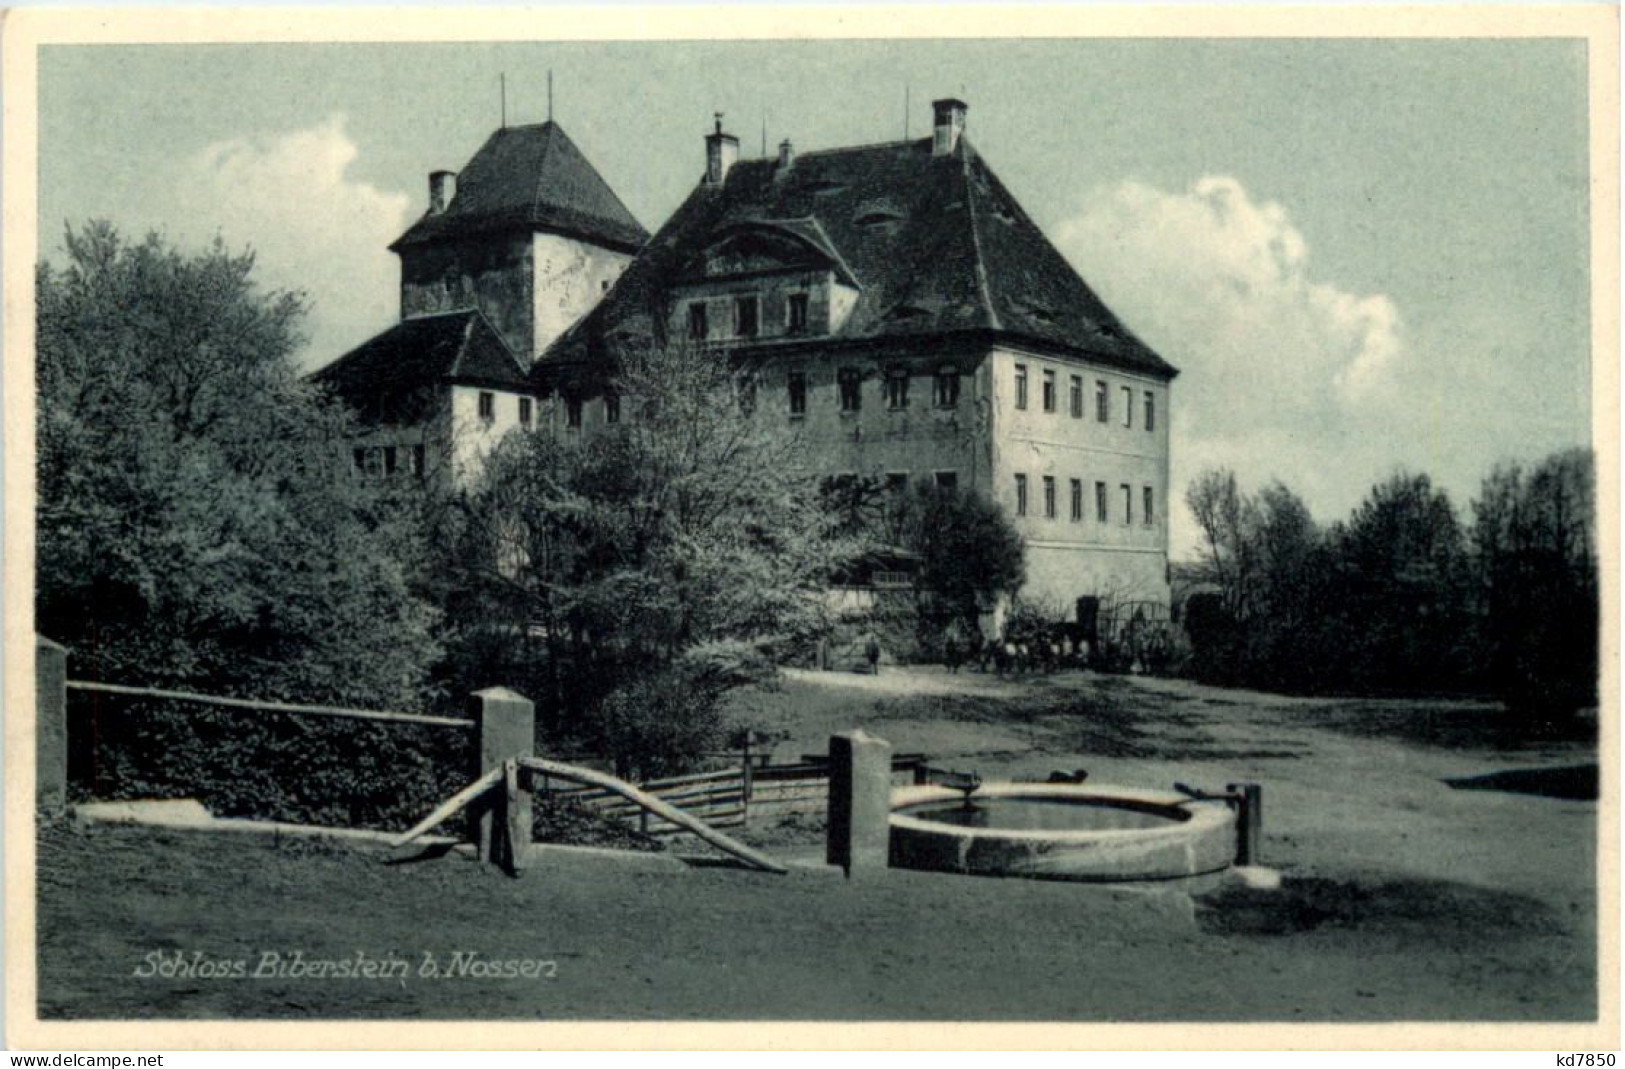 Schloss Biberstein B. Nossen - Doebeln